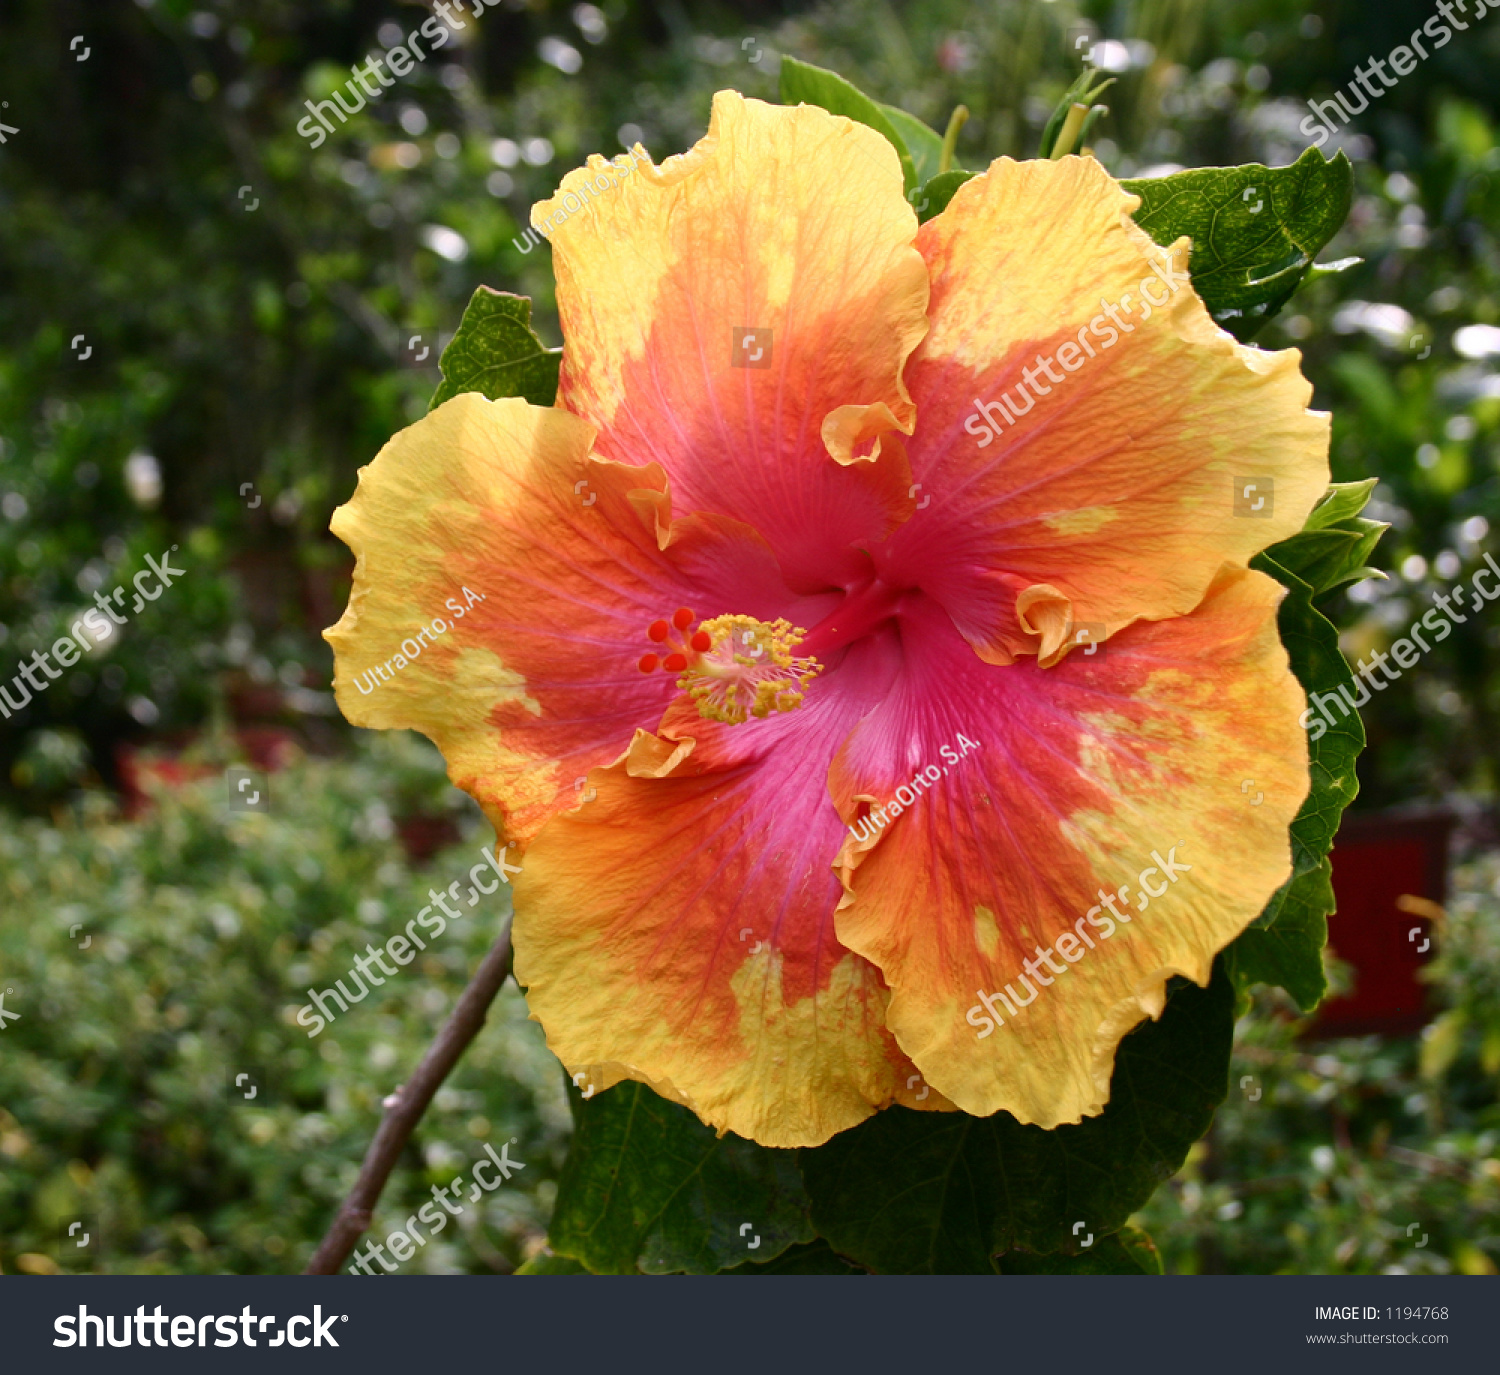 Striking Giant Hibiscus Yellow Pink Stock Photo 1194768 - Shutterstock